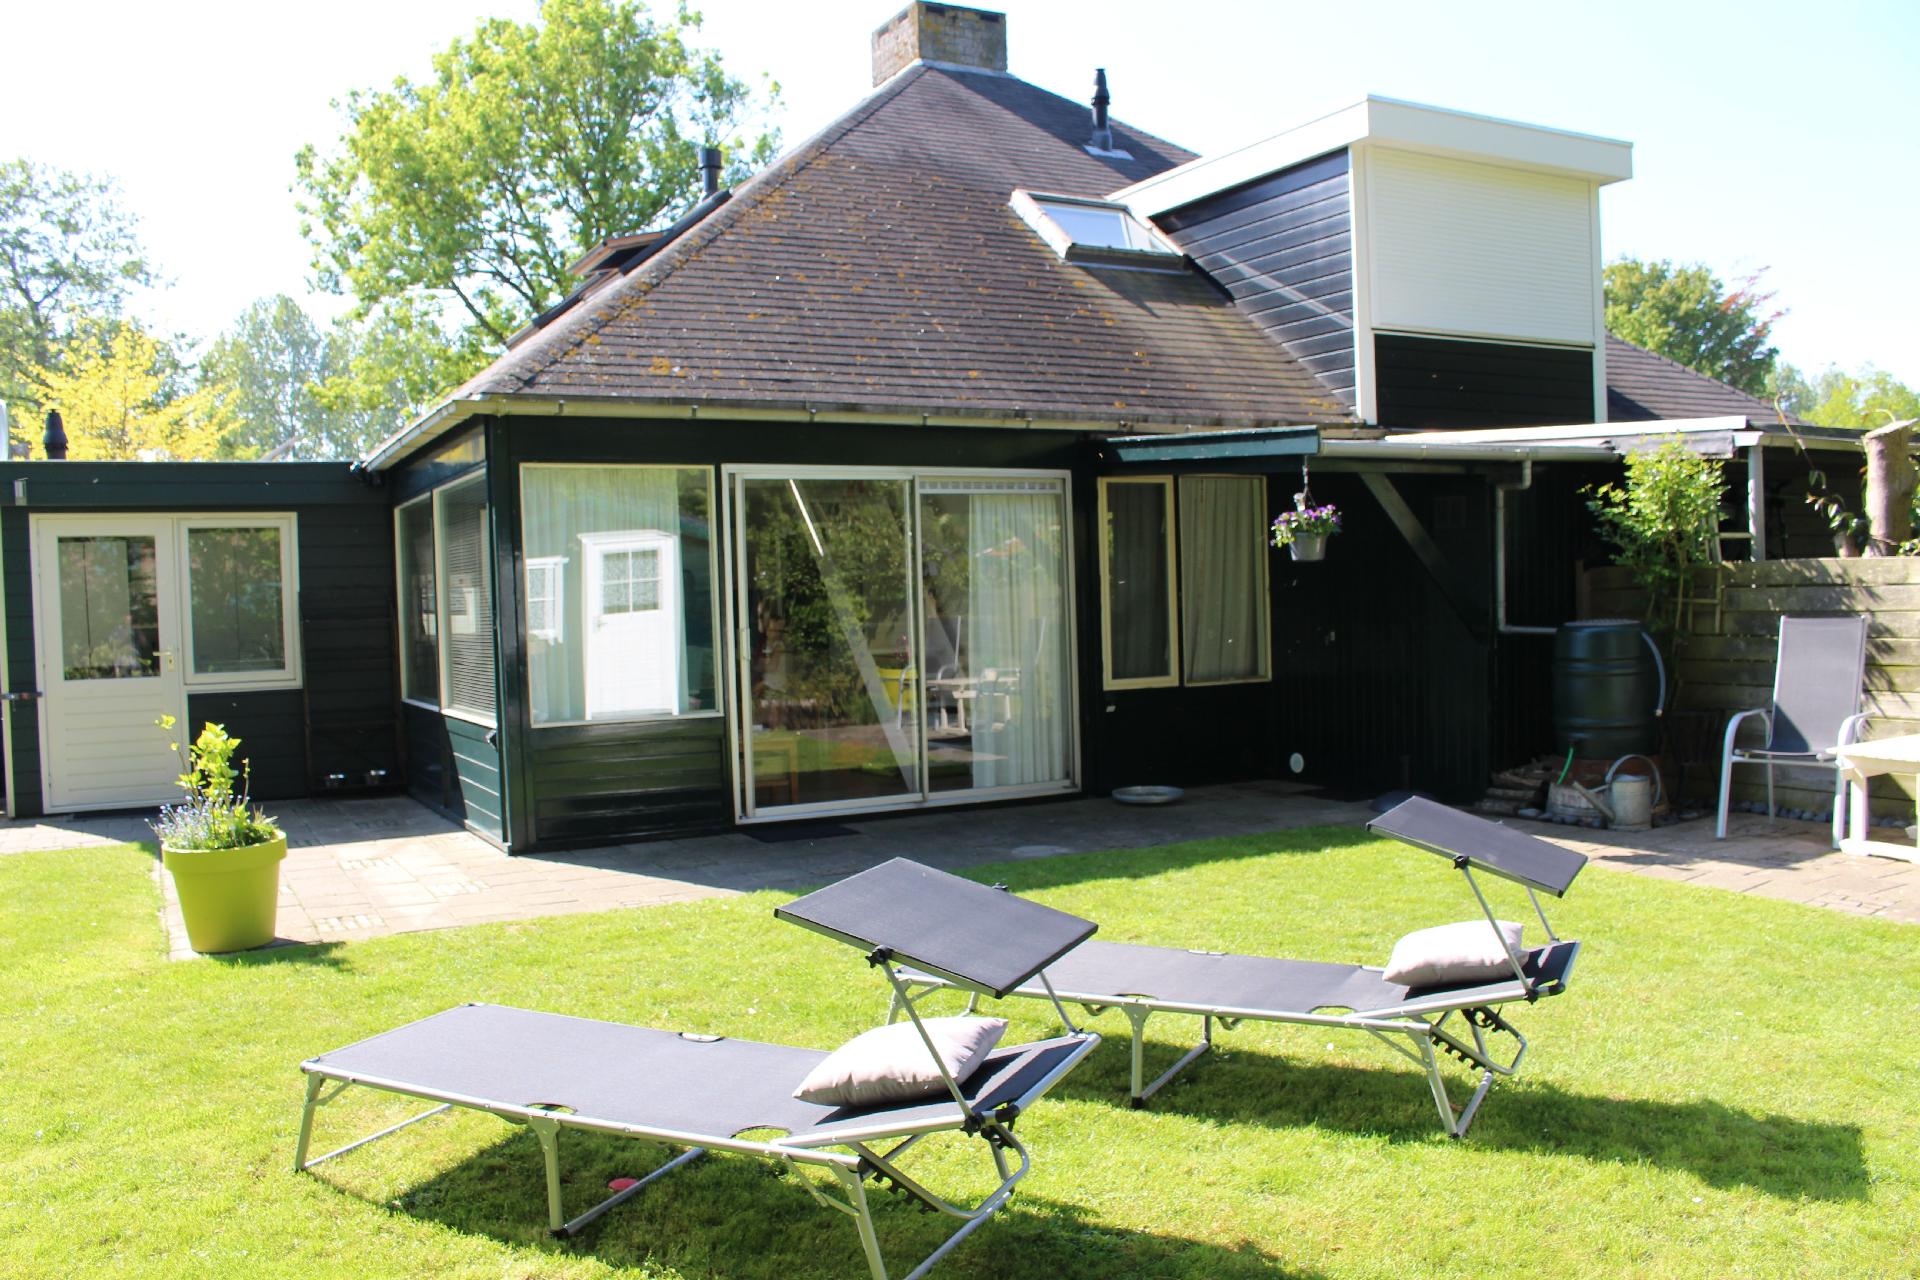 Ferienhaus in Stavenisse mit Garten, Grill und Ter Ferienhaus in den Niederlande